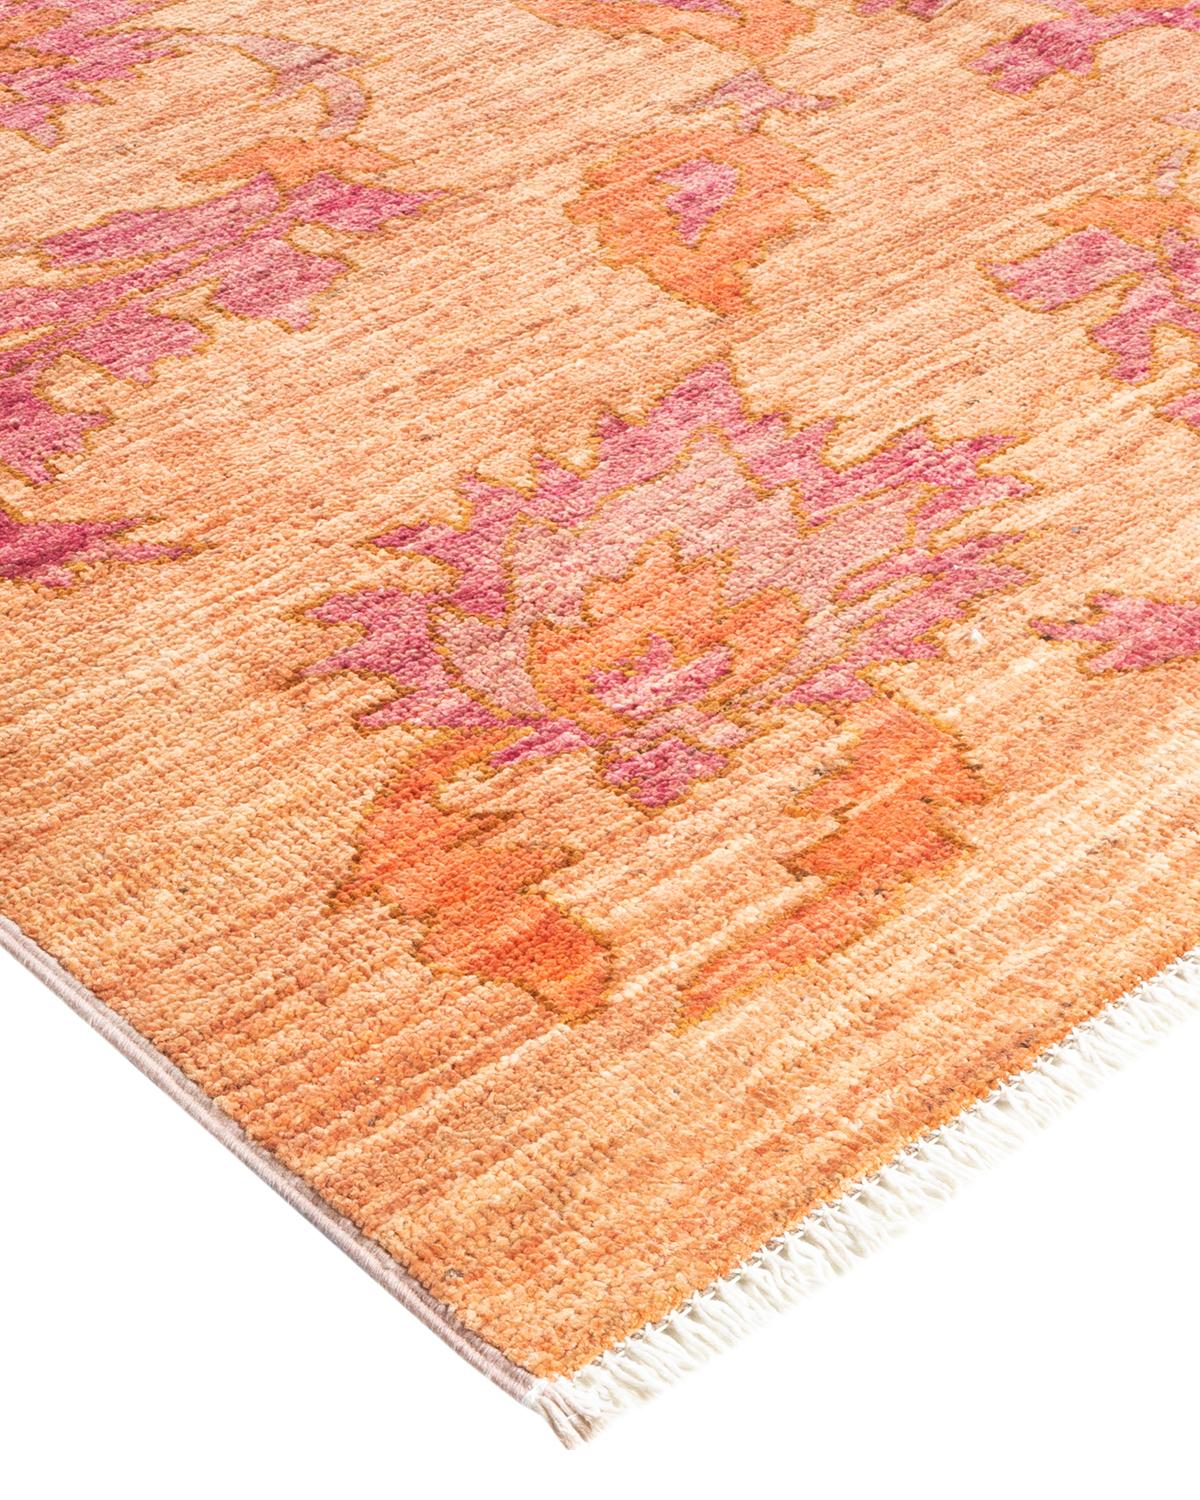 Originaires de ce qui est aujourd'hui la Turquie, les tapis Oushak sont depuis longtemps recherchés pour leurs motifs complexes, leurs couleurs luxuriantes mais subtiles et leur lustre doux. Ces tapis perpétuent cette tradition. Noués à la main en